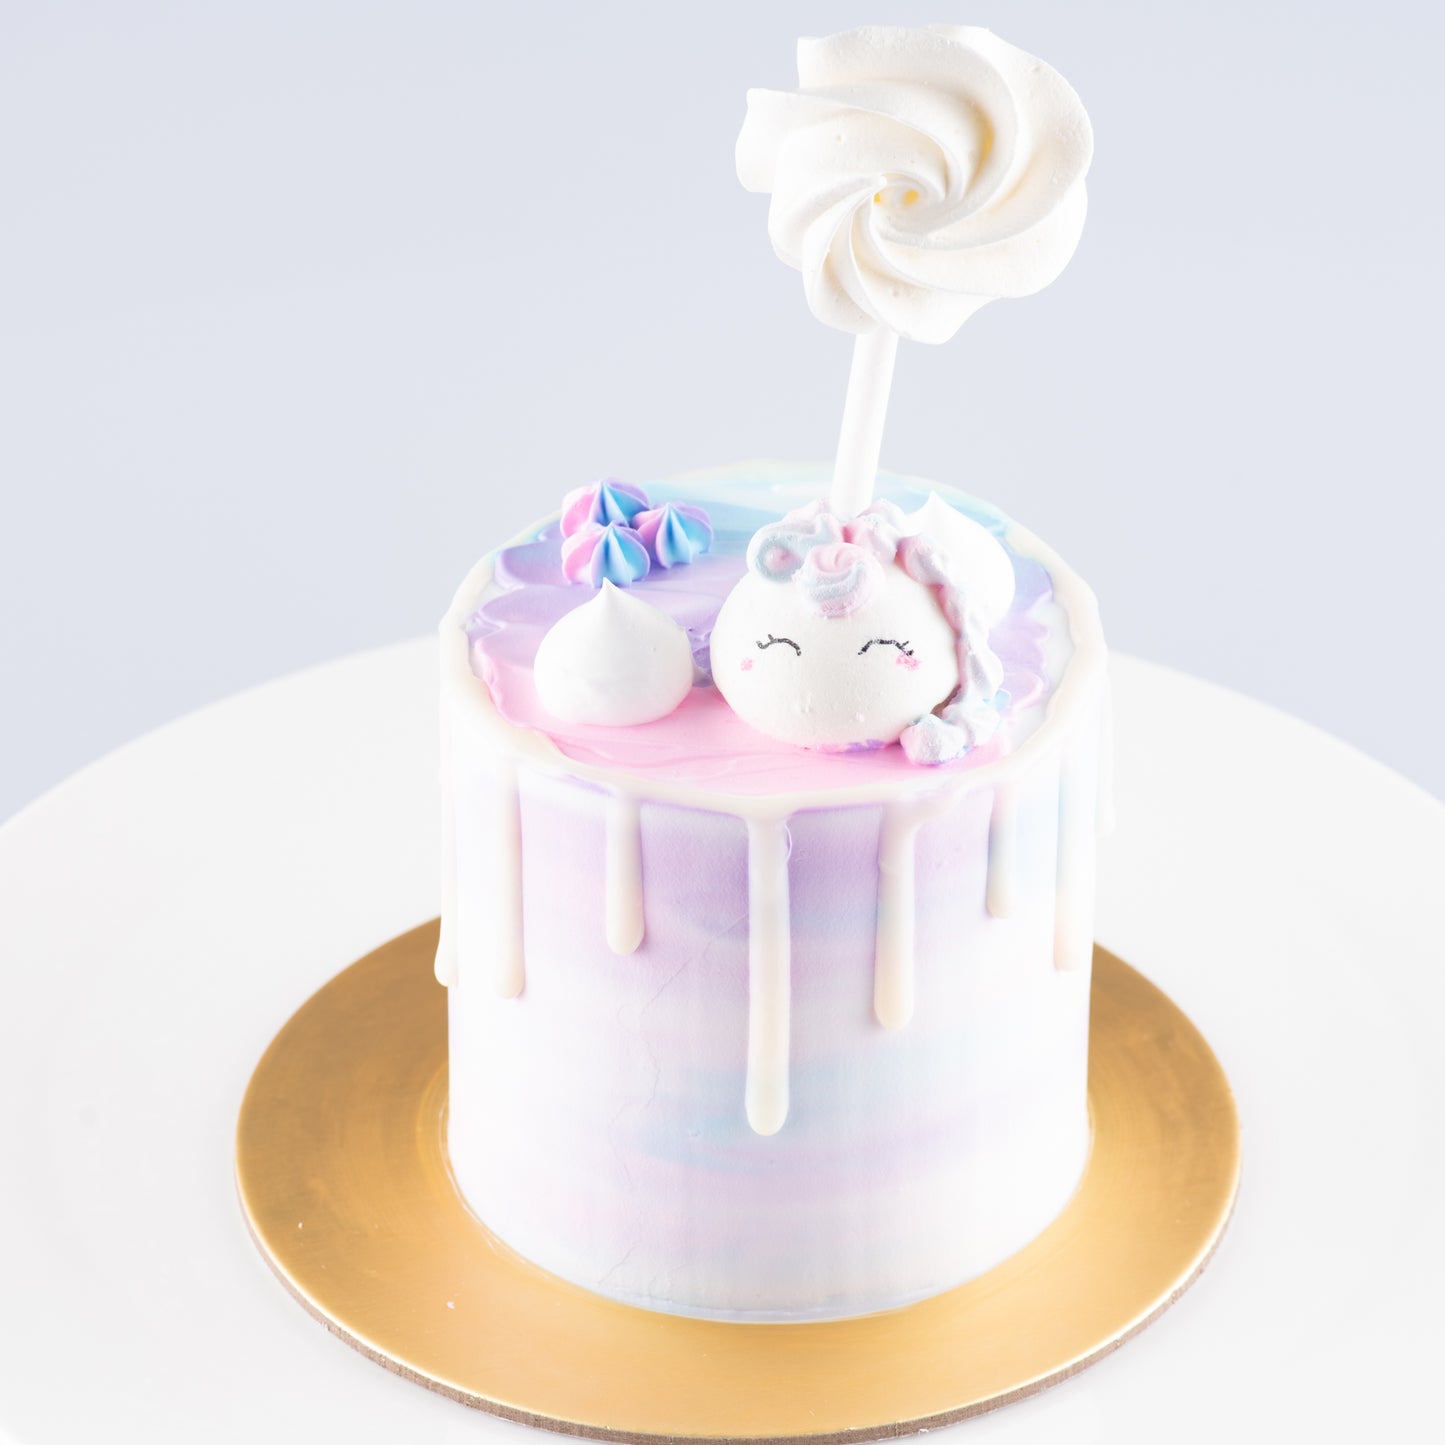 Sales! Unicorn Cake Petite | Vanilla Cream Cheese | $28.80 nett only